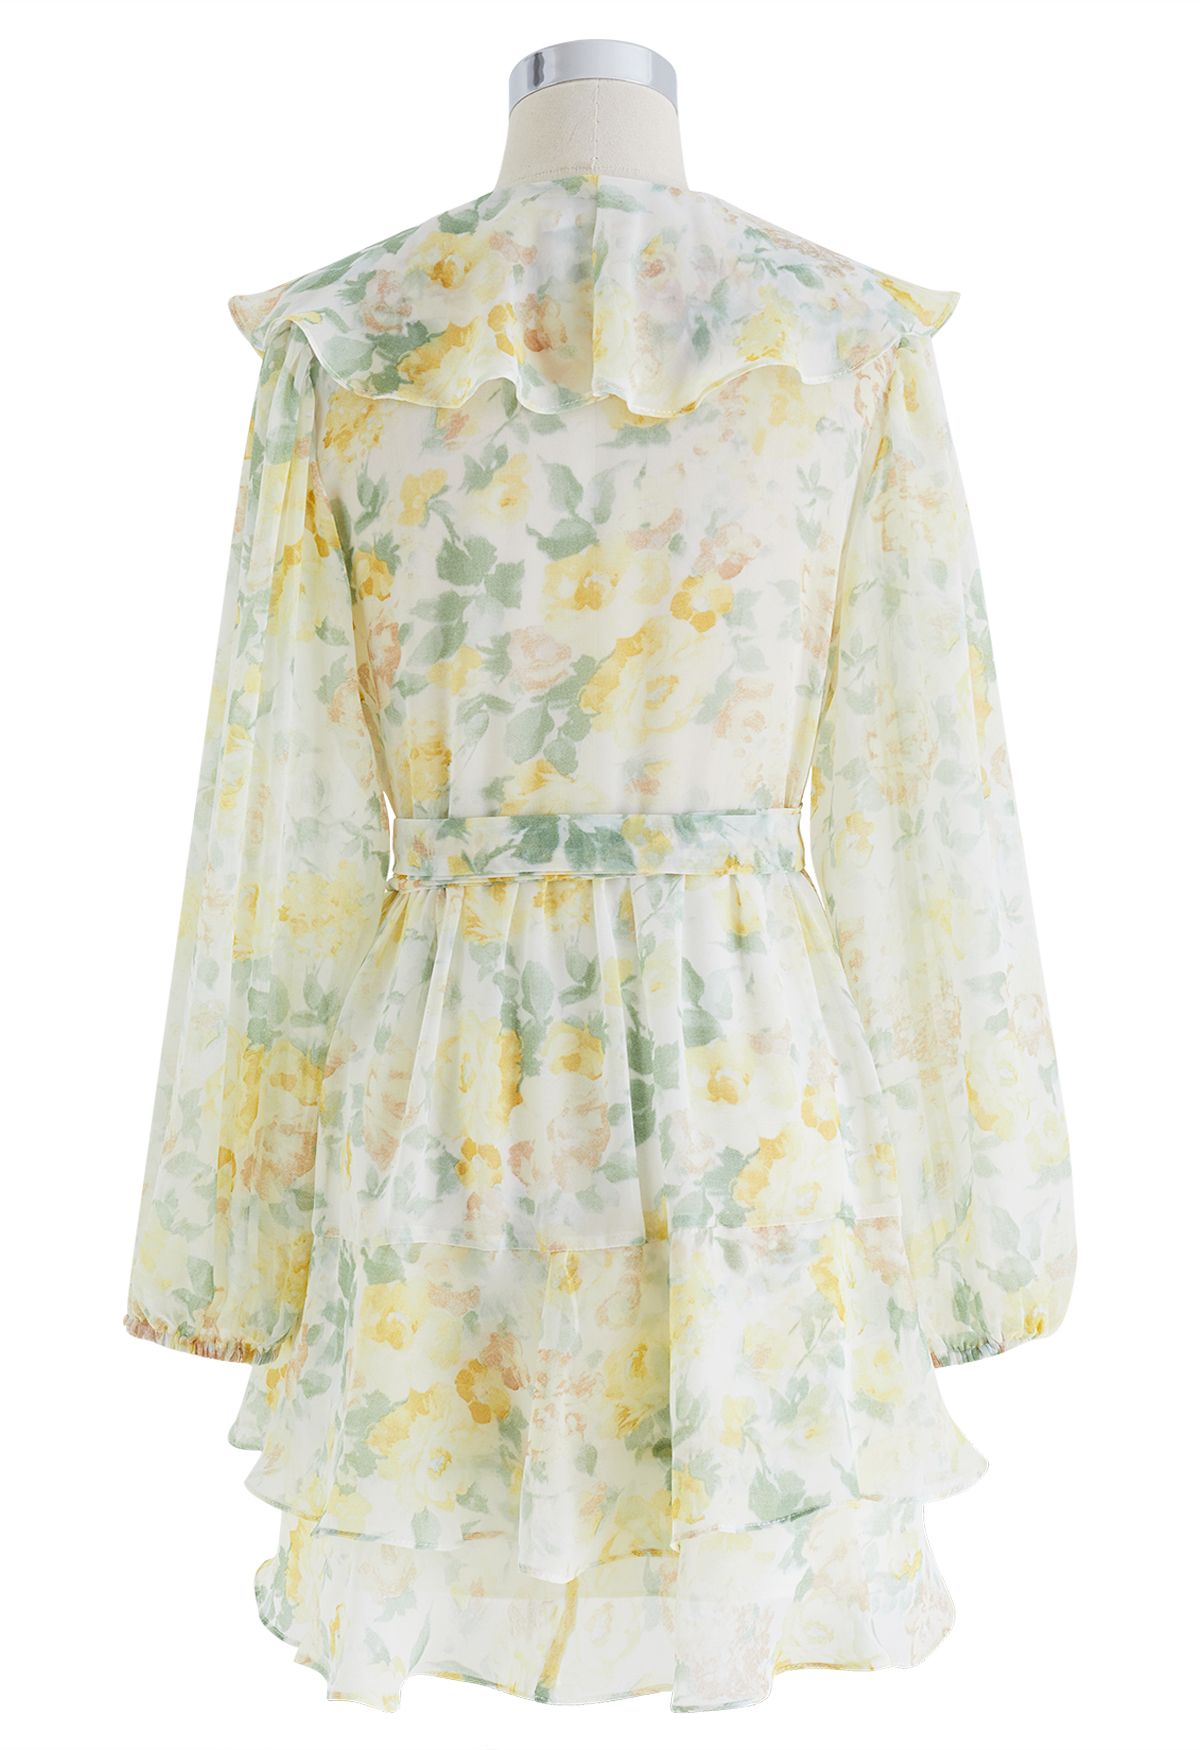 Sweet Bloom Ruffle Wrap Mini Dress in Pistachio